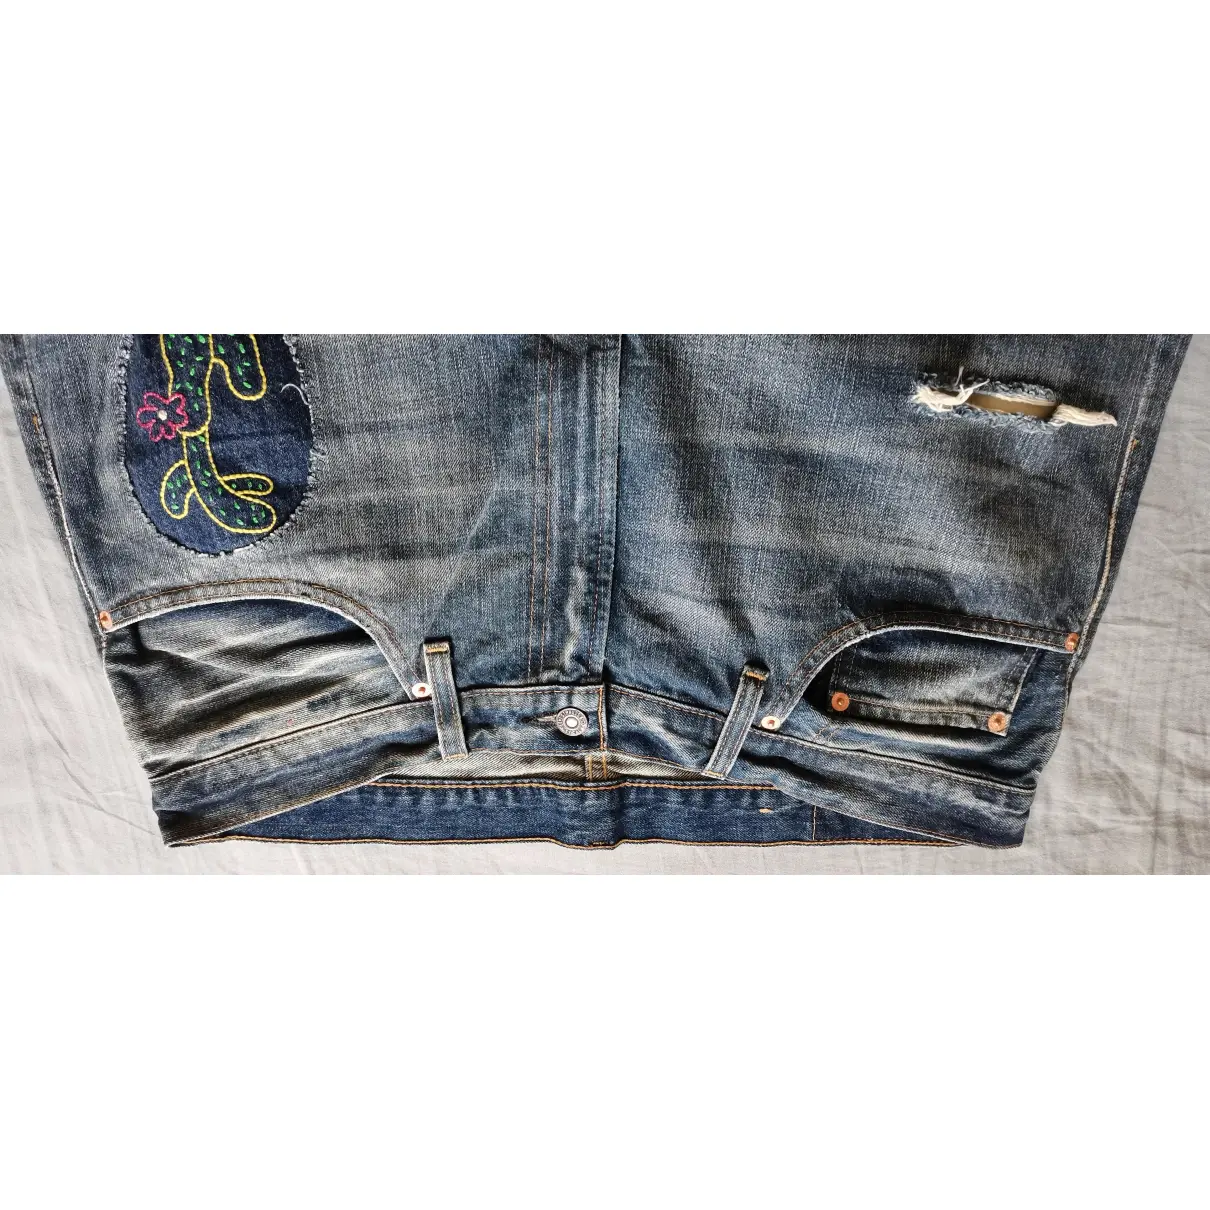 Blue Cotton Jeans Levi's Vintage Clothing